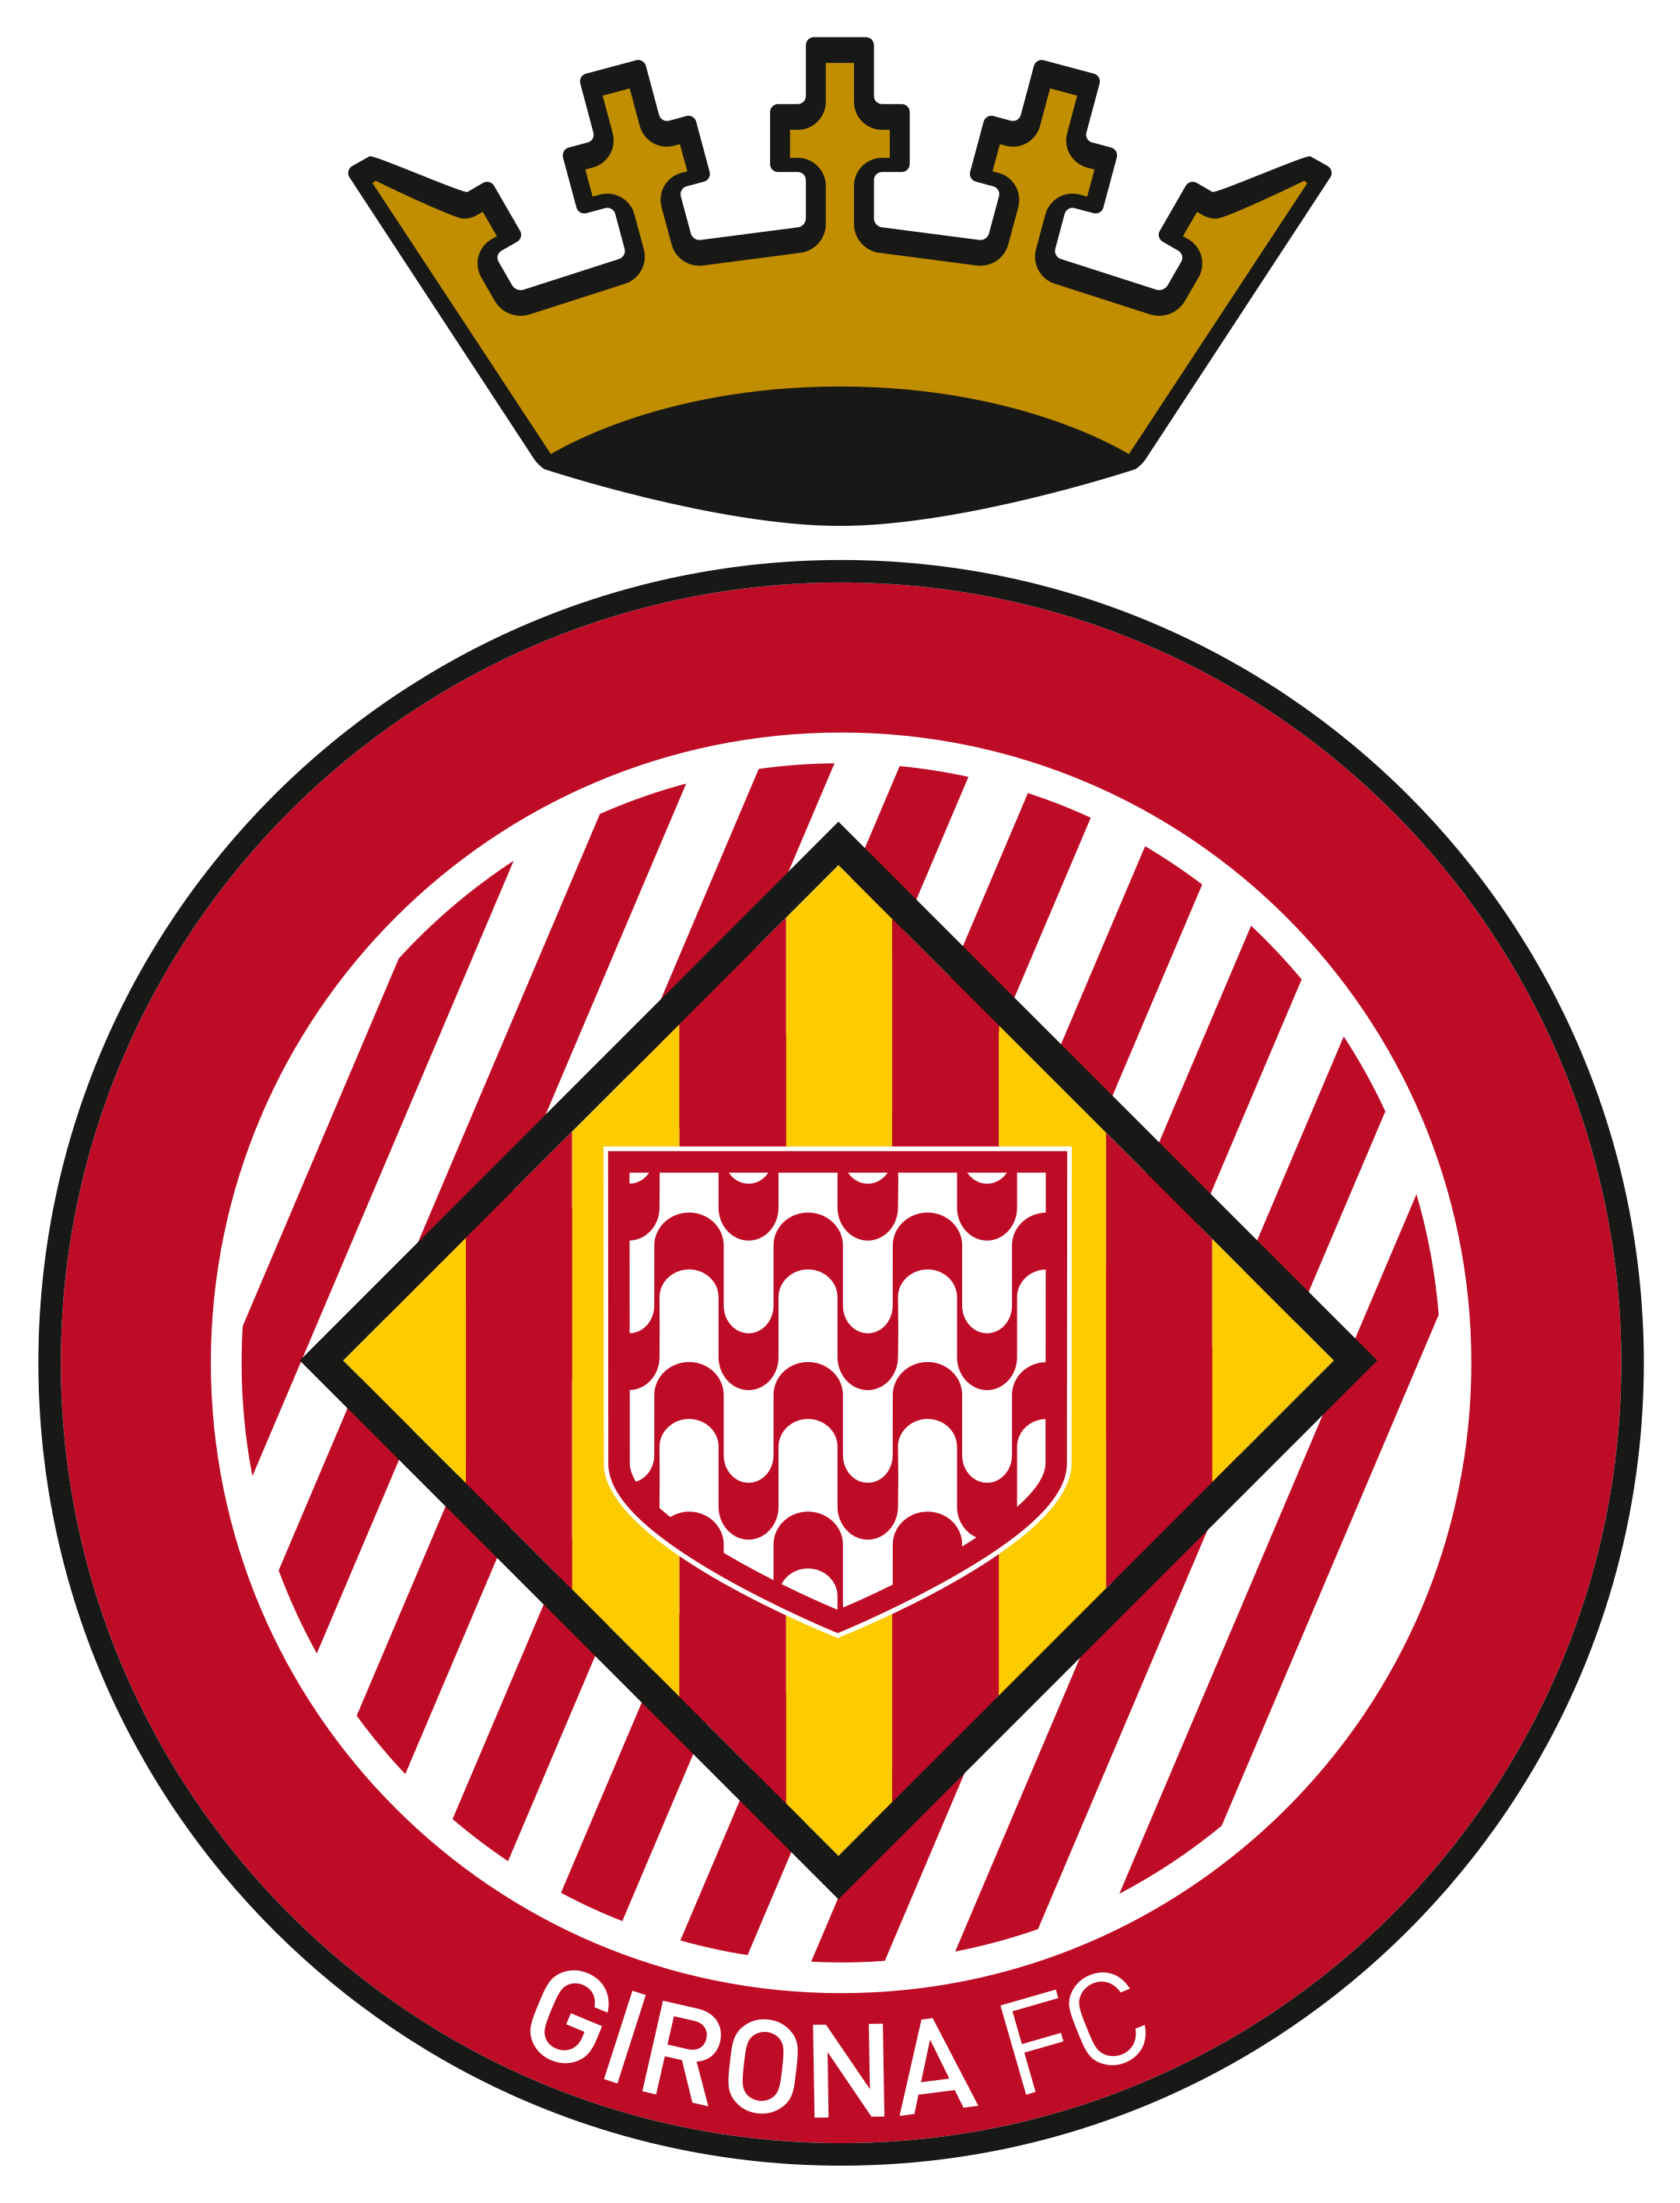 girona fc logo 1 - Girona FC Logo